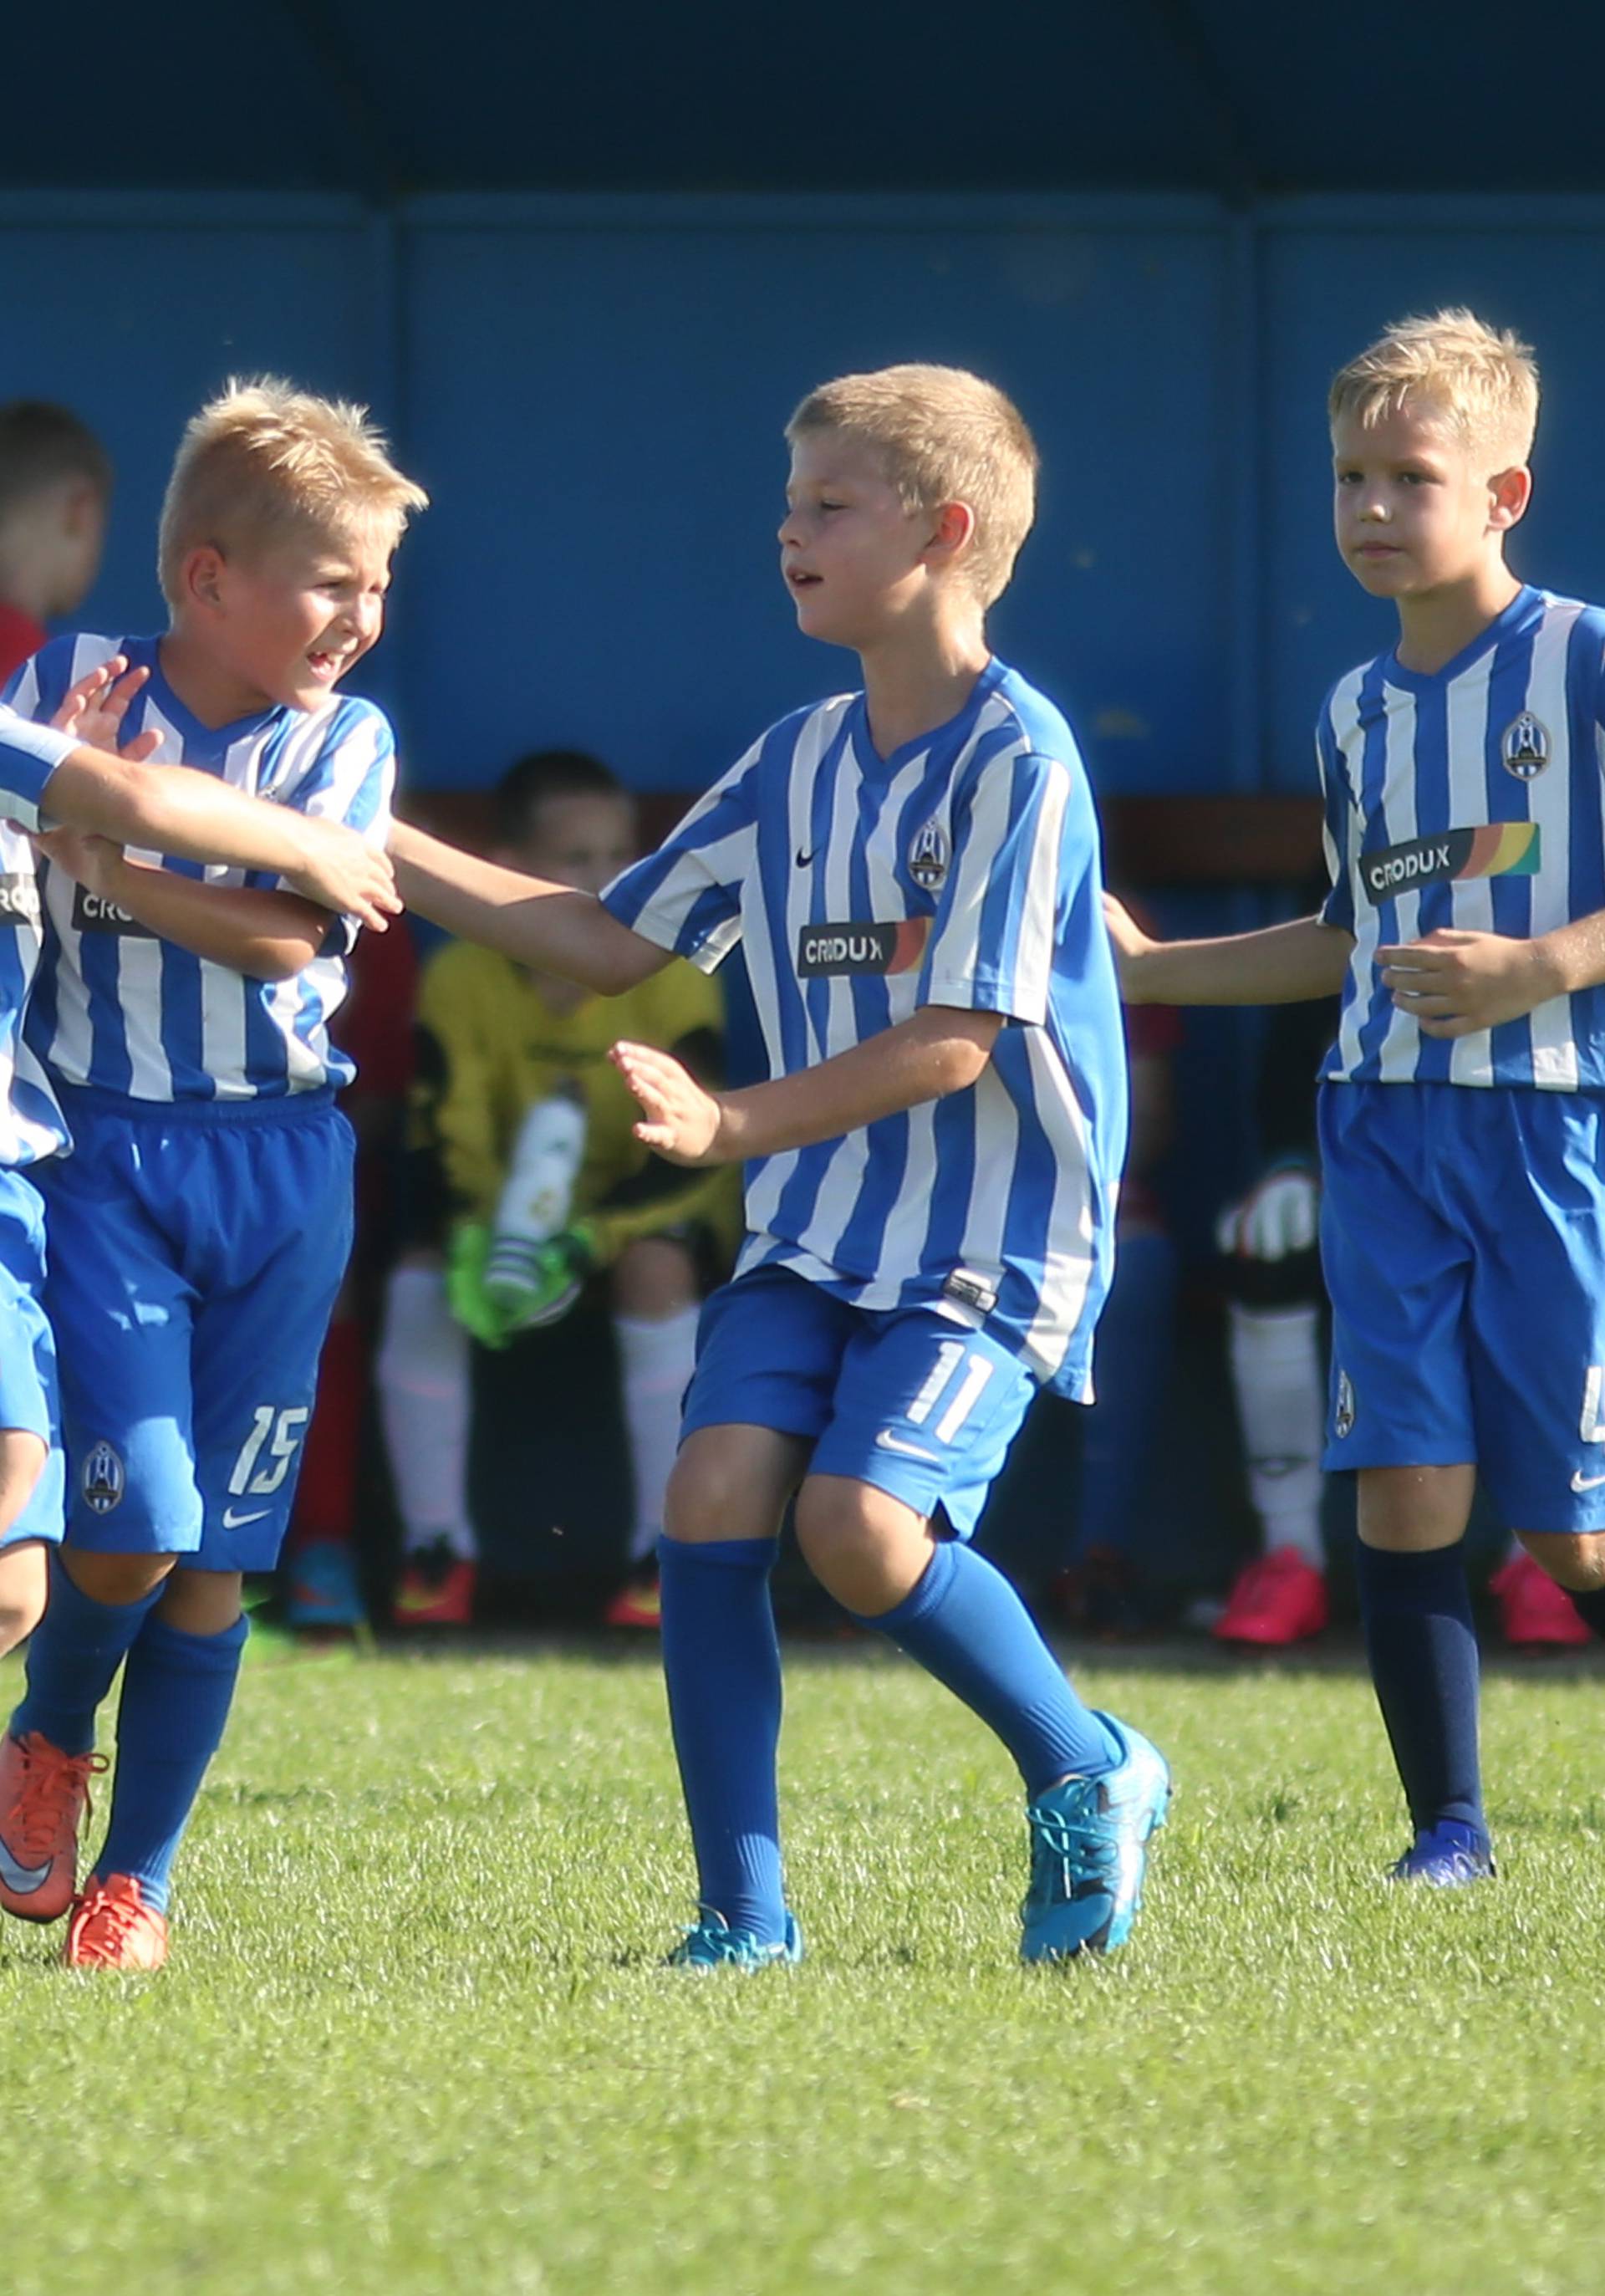 Održava se već sedam godina: Dječji nogometni turnir Odra